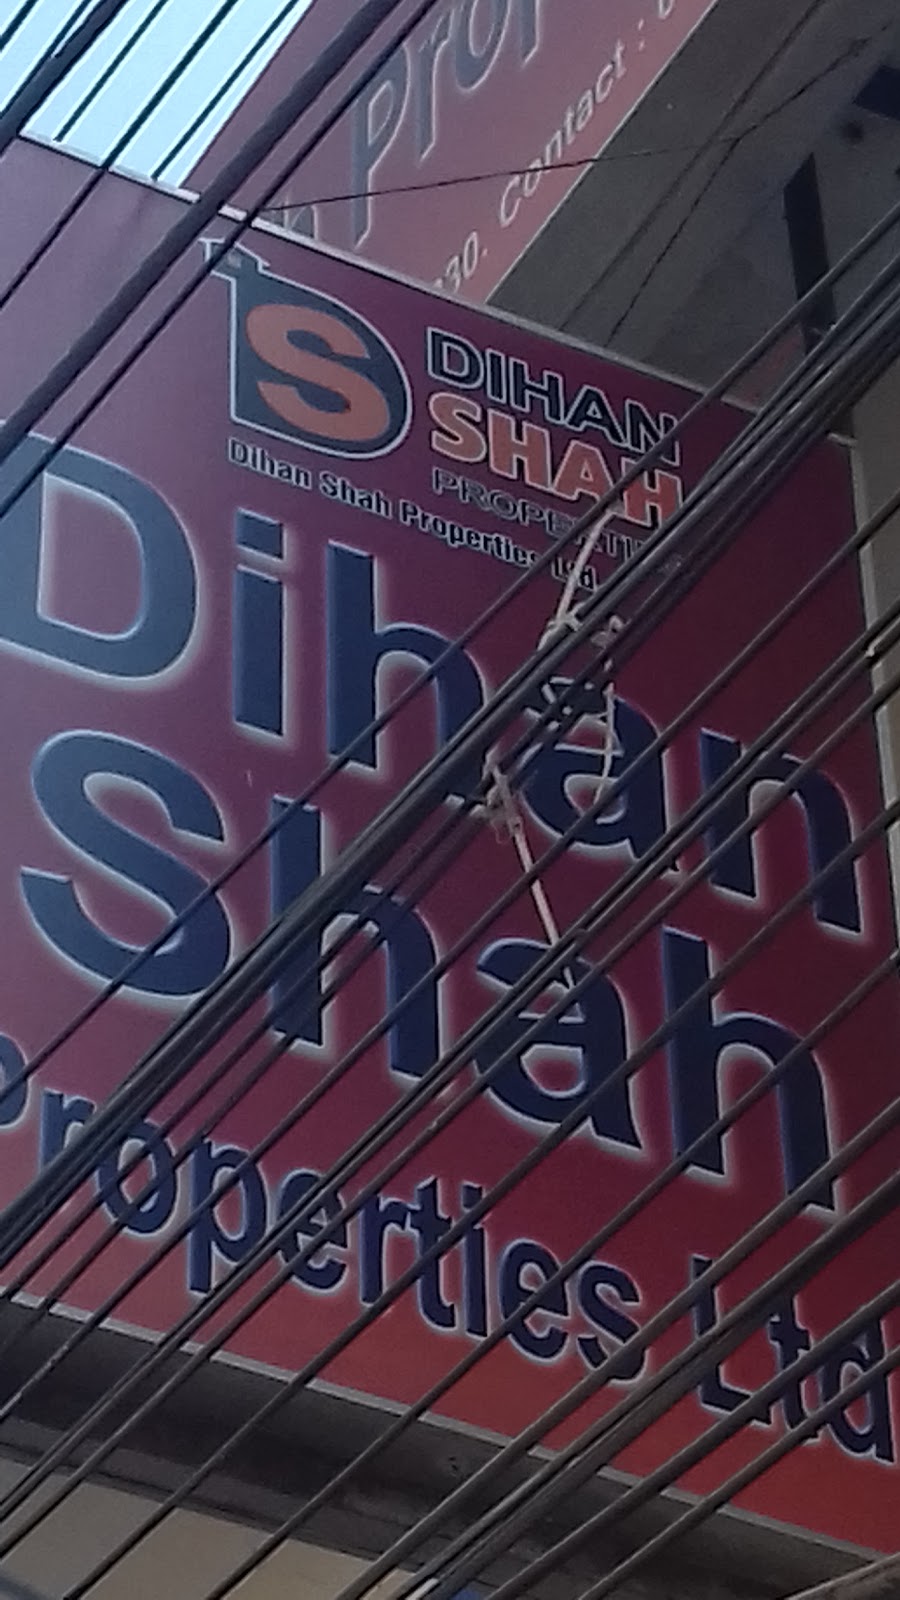 Dihan Shah Properties Ltd.